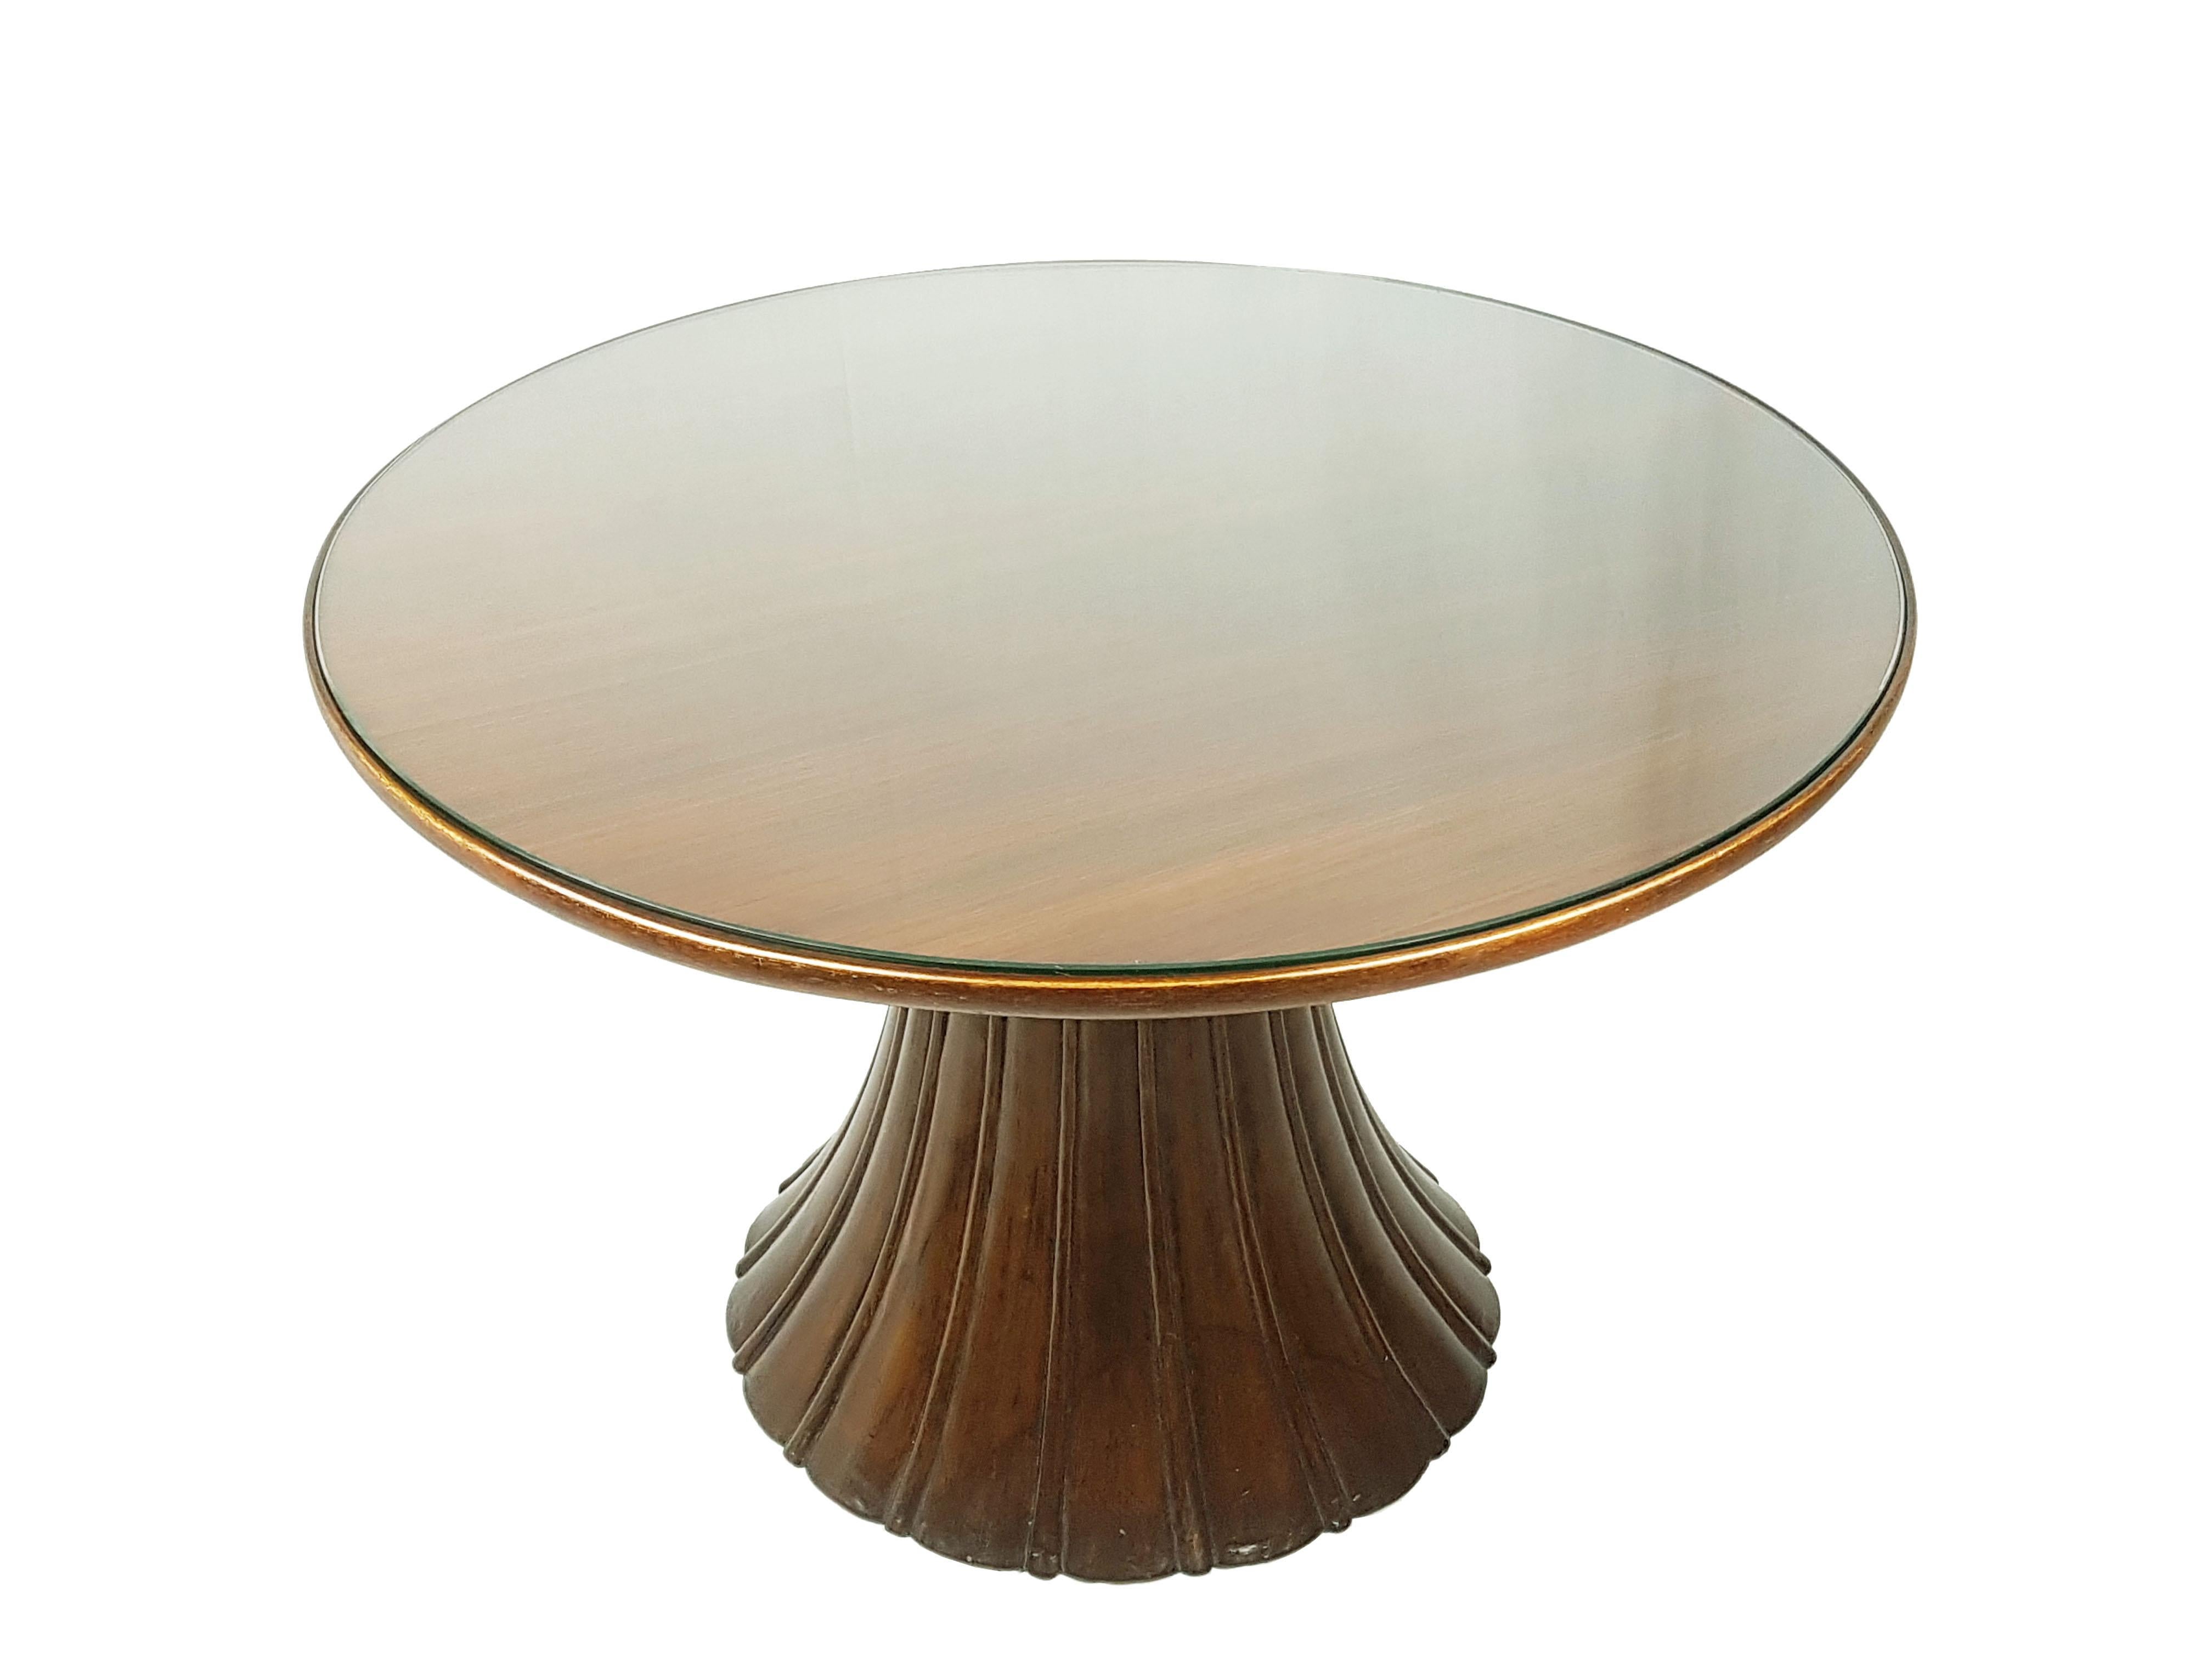 Fine et rare table basse attribuée à Guglielmo Ulrich. Cette belle table a été fabriquée en Italie vers les années 1940 en bois massif, teinté et poli, avec un plateau rond en verre. La structure de la base est massive et sculpturale et contraste